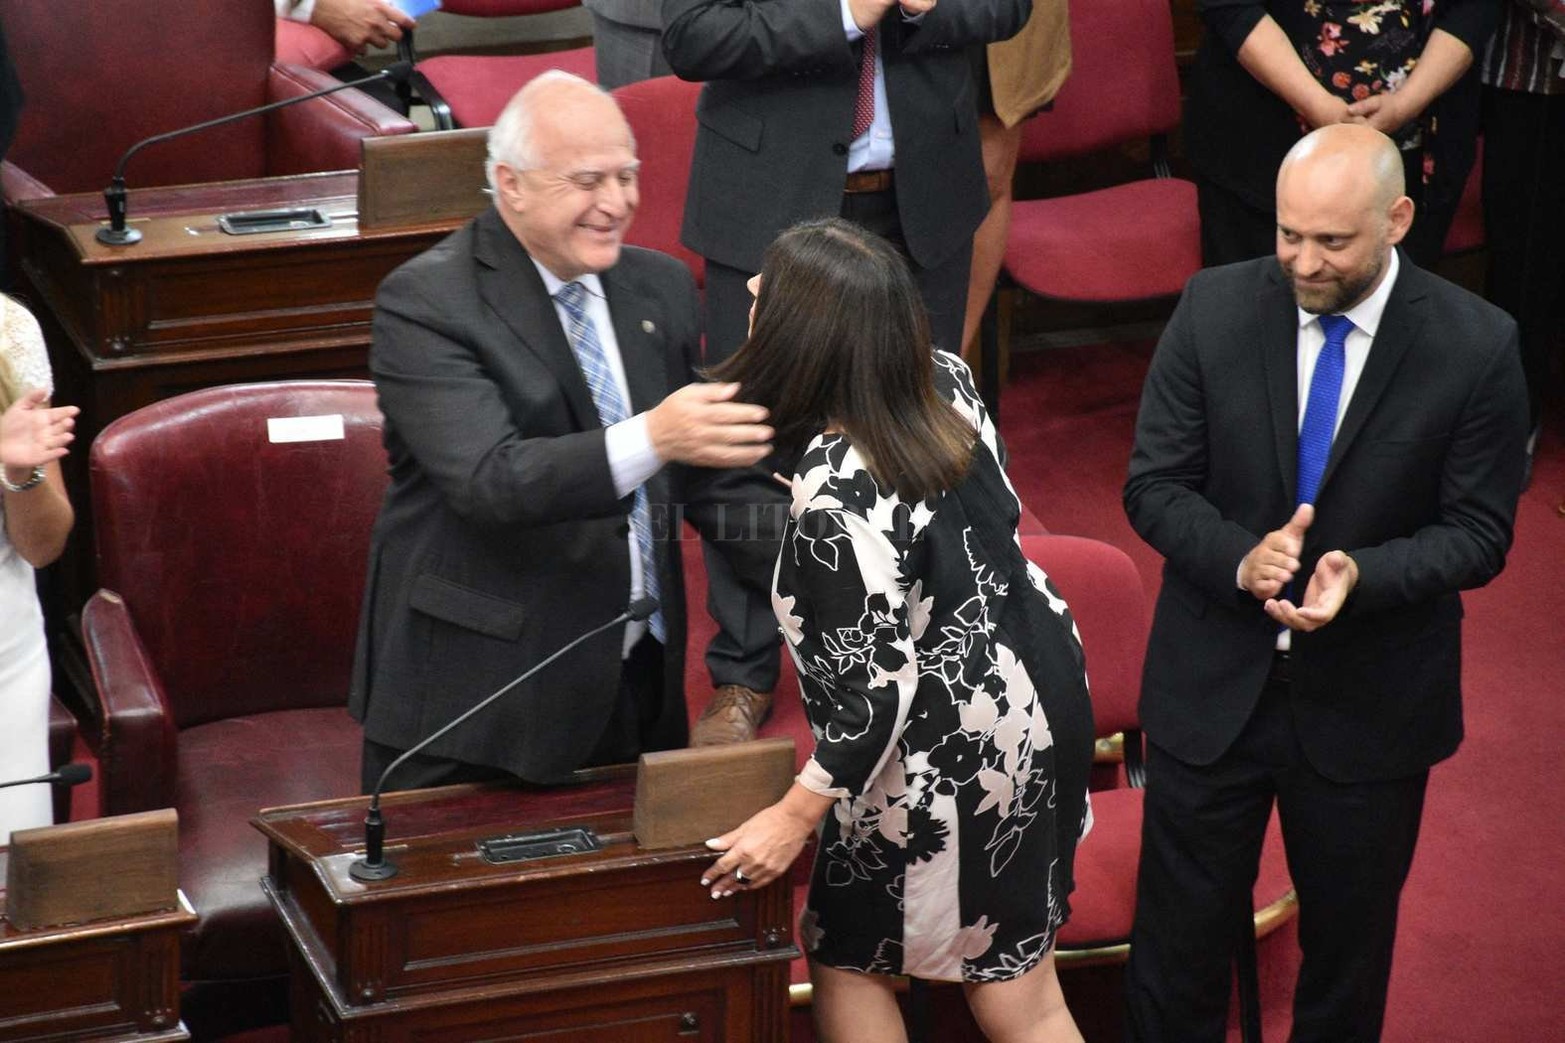 5 de diciembre de 2019. Su última jura cuando asumió como diputado provincial. En la foto el saludo con su mujer, la diputada Clara García.